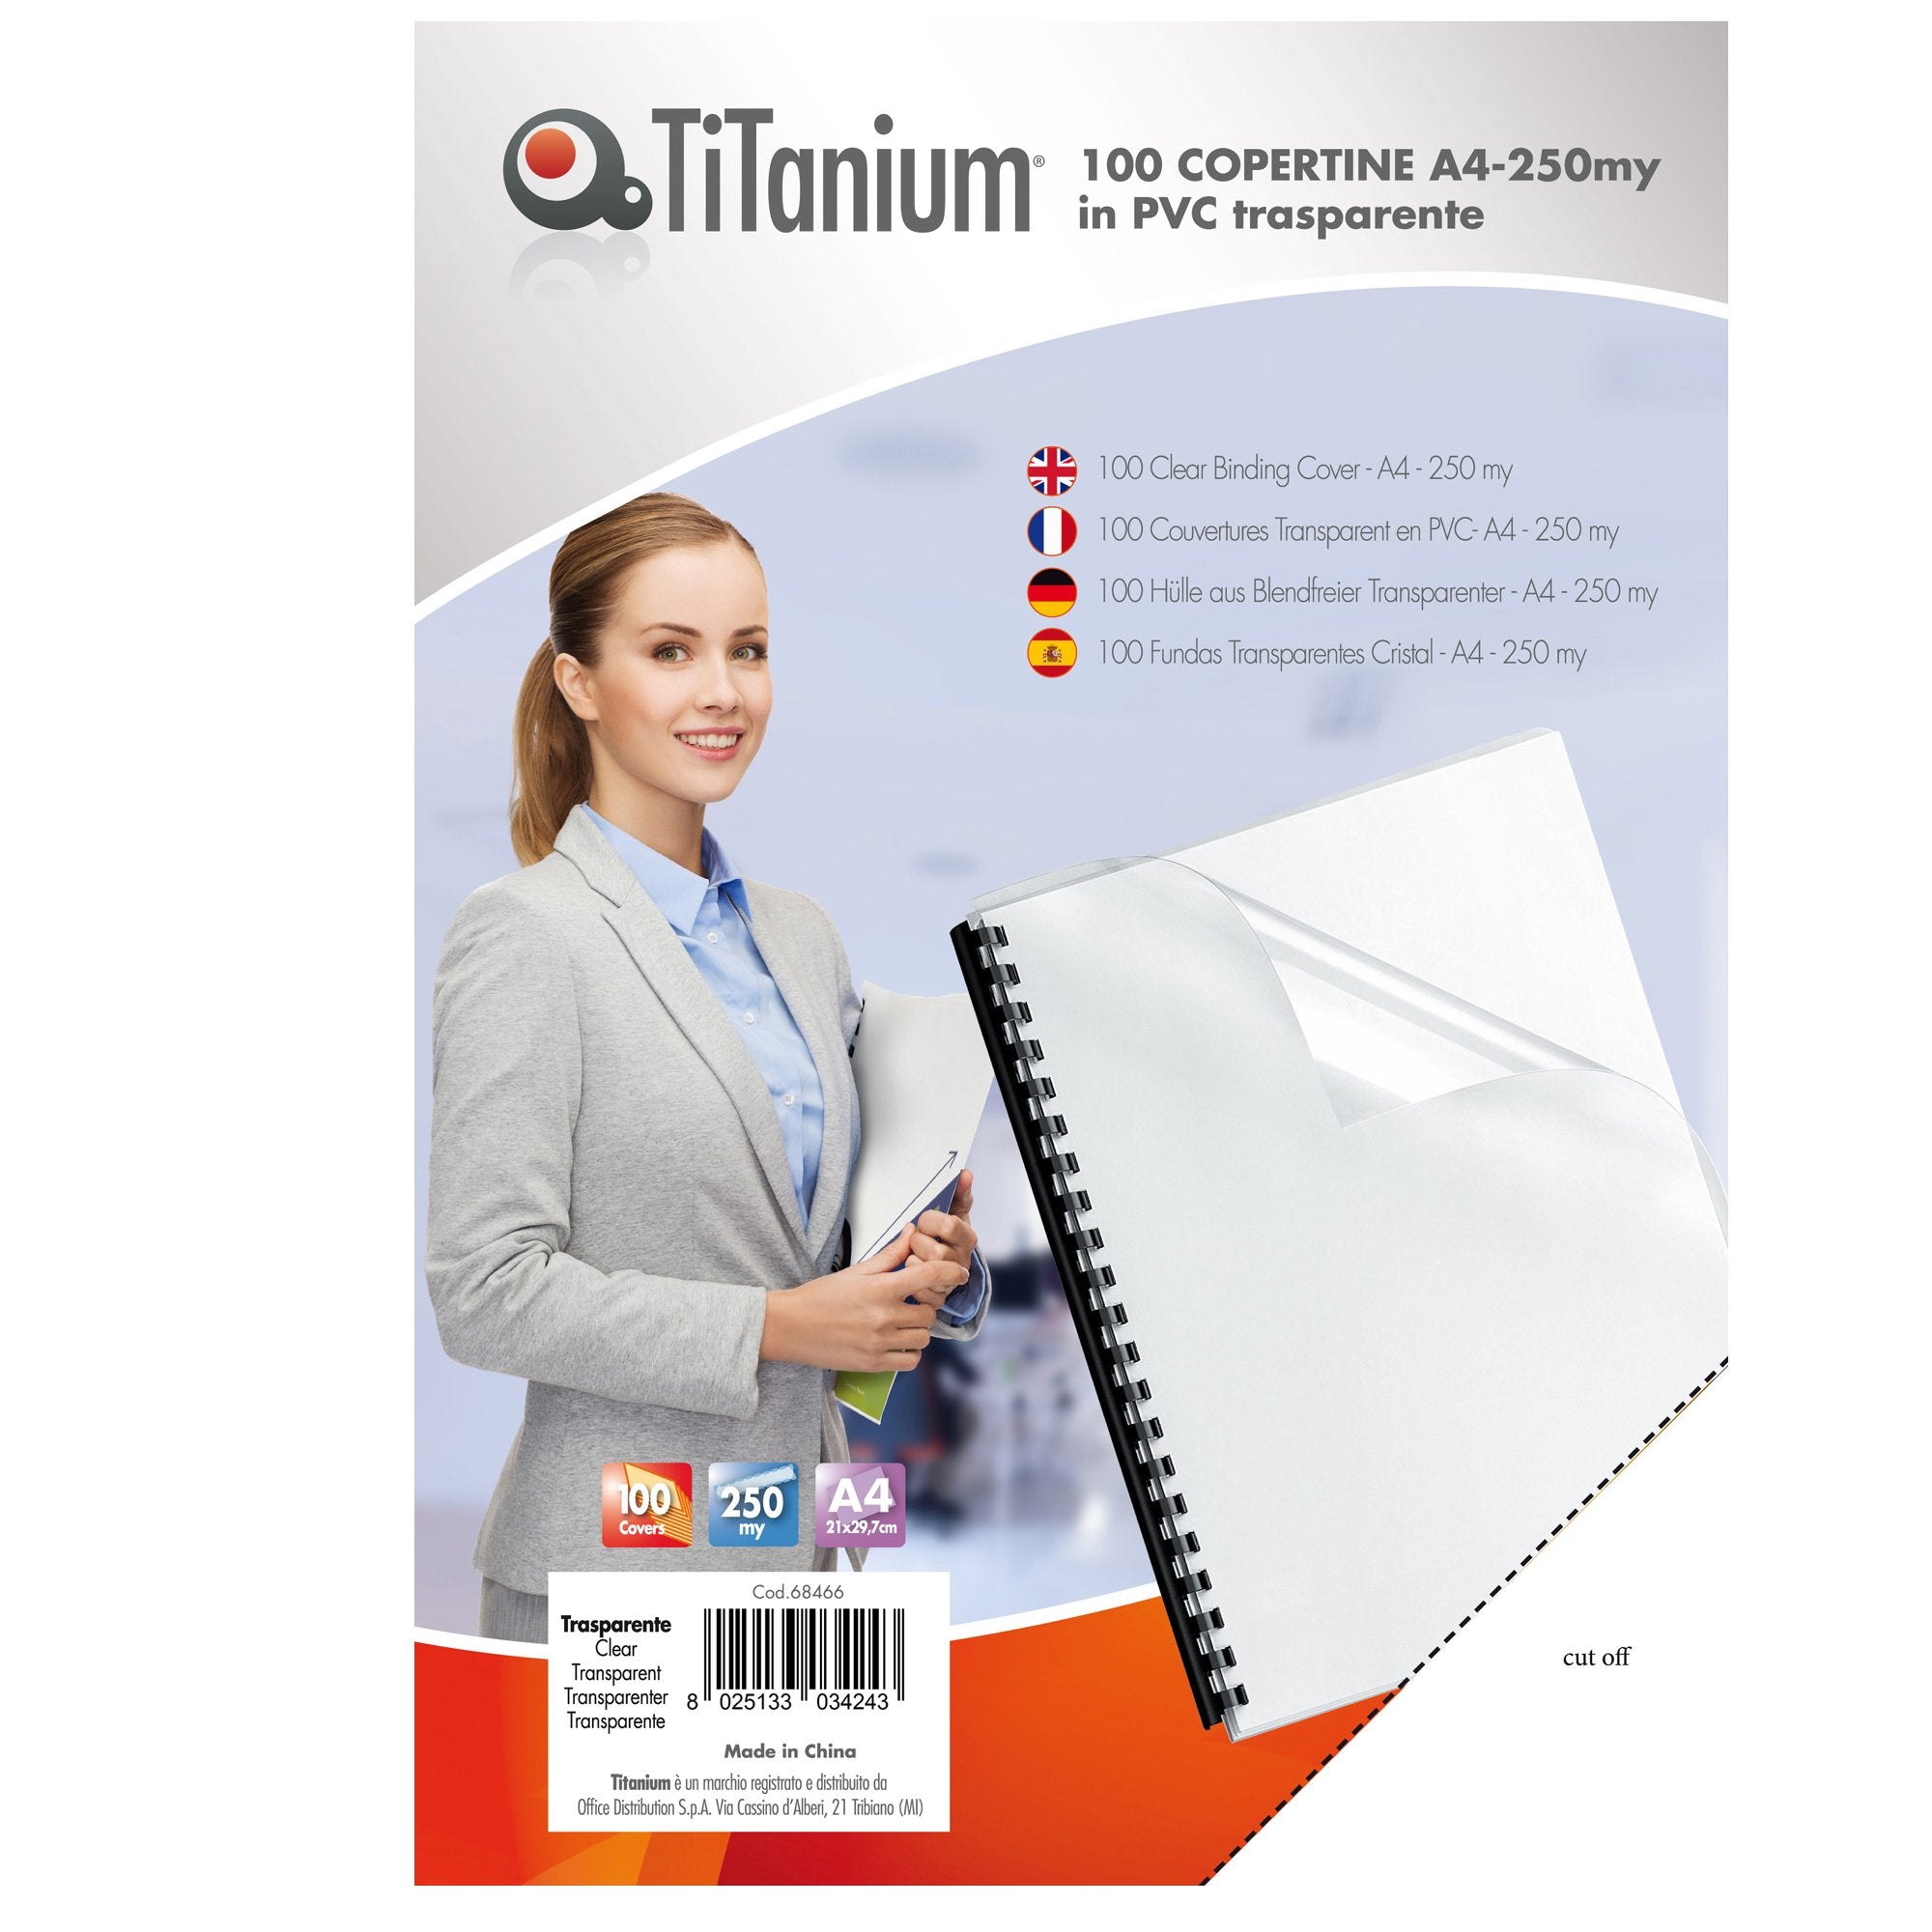 titanium-100-copertine-a4-pvc-trasparente-250my